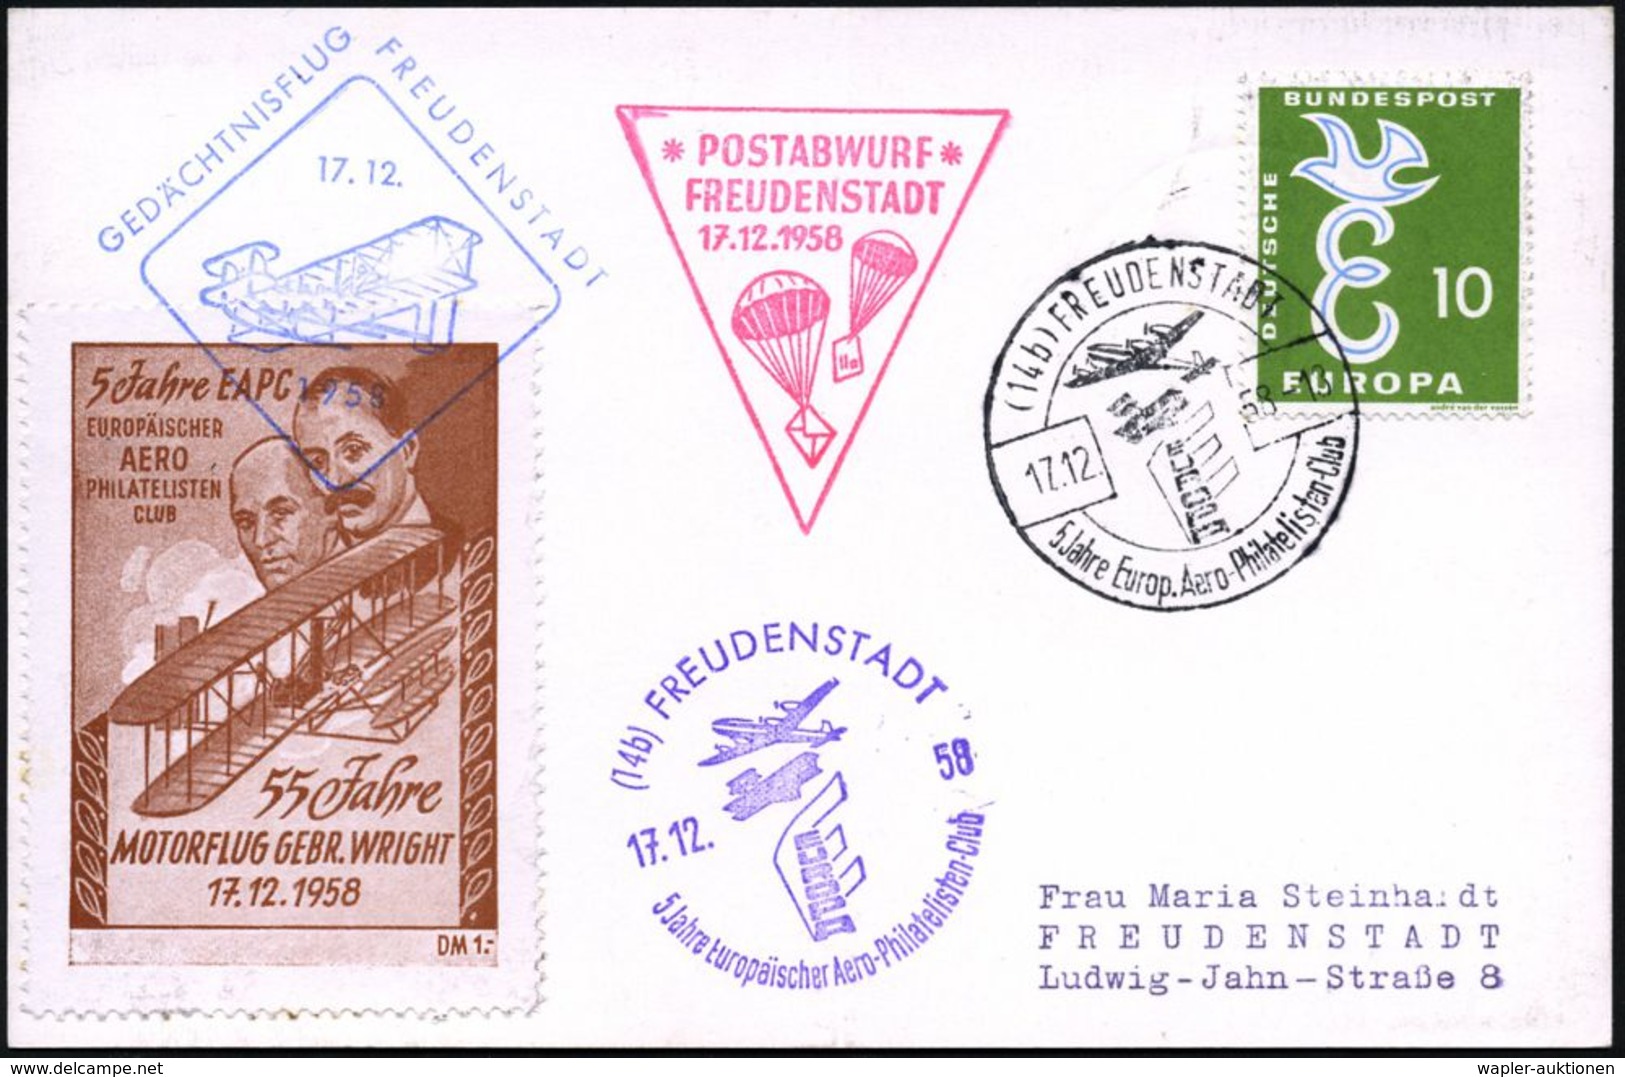 (14b) FREUDENSTADT/ 5 Jahre EAPhC 1958 (17.12.) SSt + HdN: POSTABWURF/FREUDENSTADT = 2 Fallschirme (mit Briefen) + Spend - Fallschirmspringen